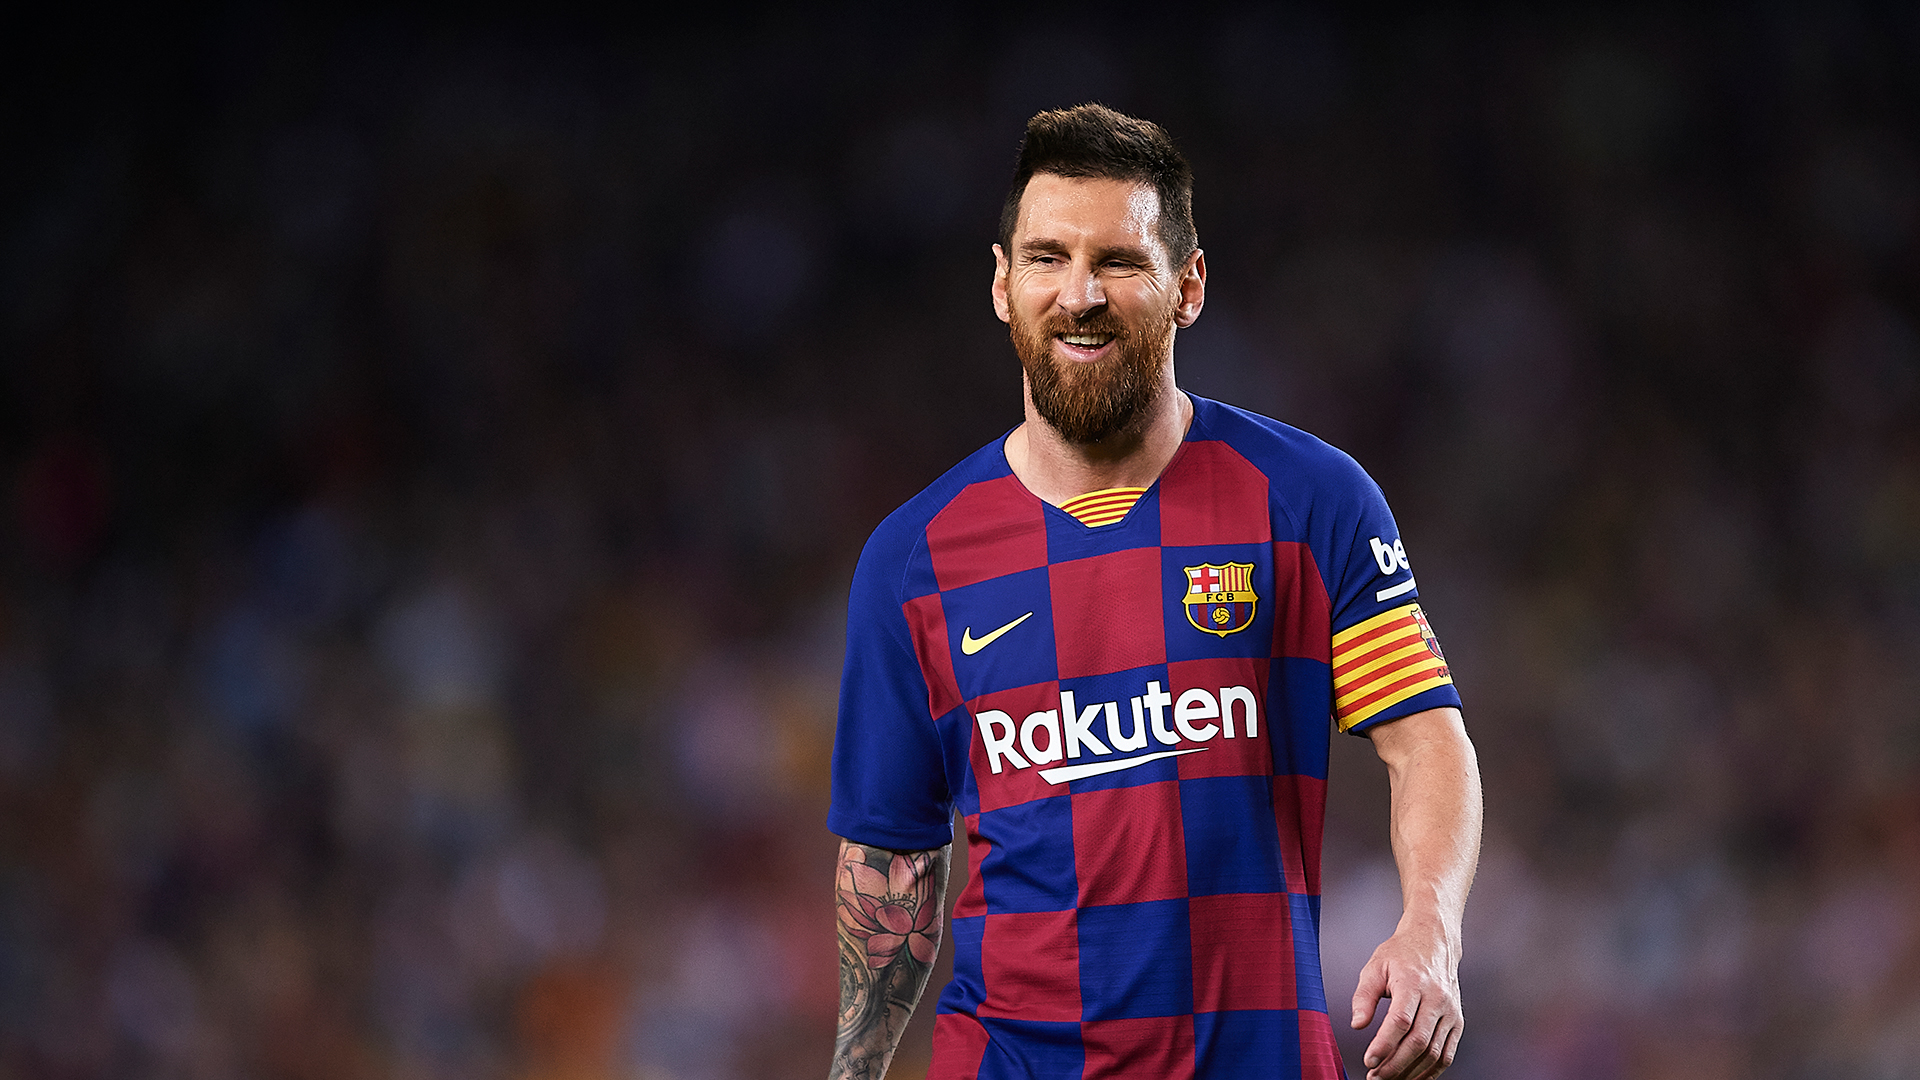 Barça - Le maillot de la saison 2020-2021 devrait revenir aux bandes verticales